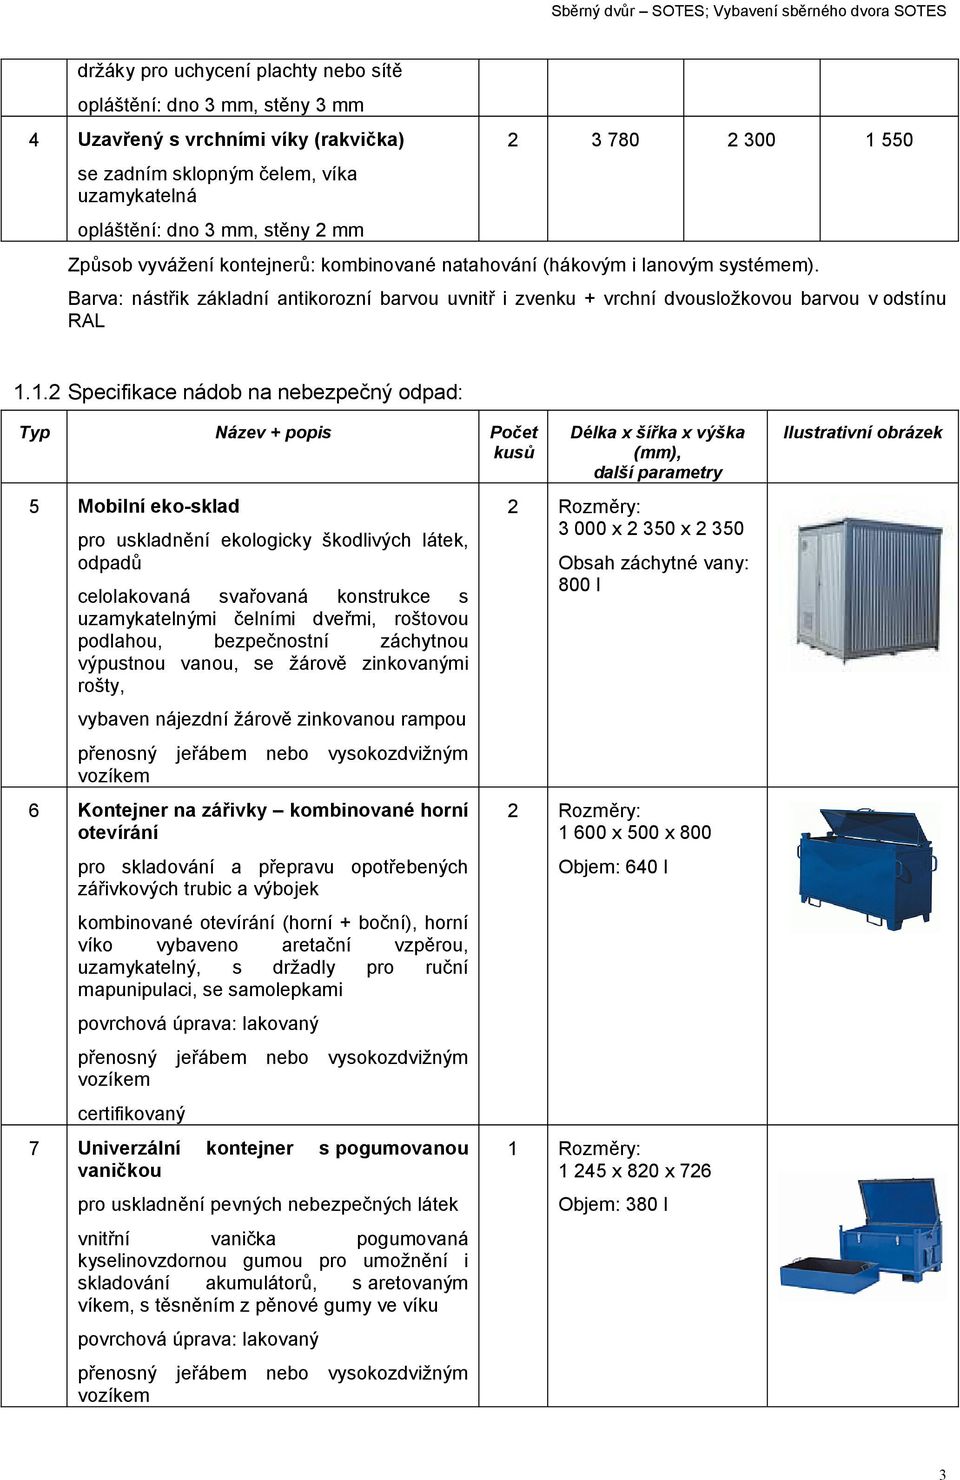 1.2 Specifikace nádob na nebezpečný odpad: Typ Název + popis Počet kusů 5 Mobilní eko-sklad pro uskladnění ekologicky škodlivých látek, odpadů celolakovaná svařovaná konstrukce s uzamykatelnými